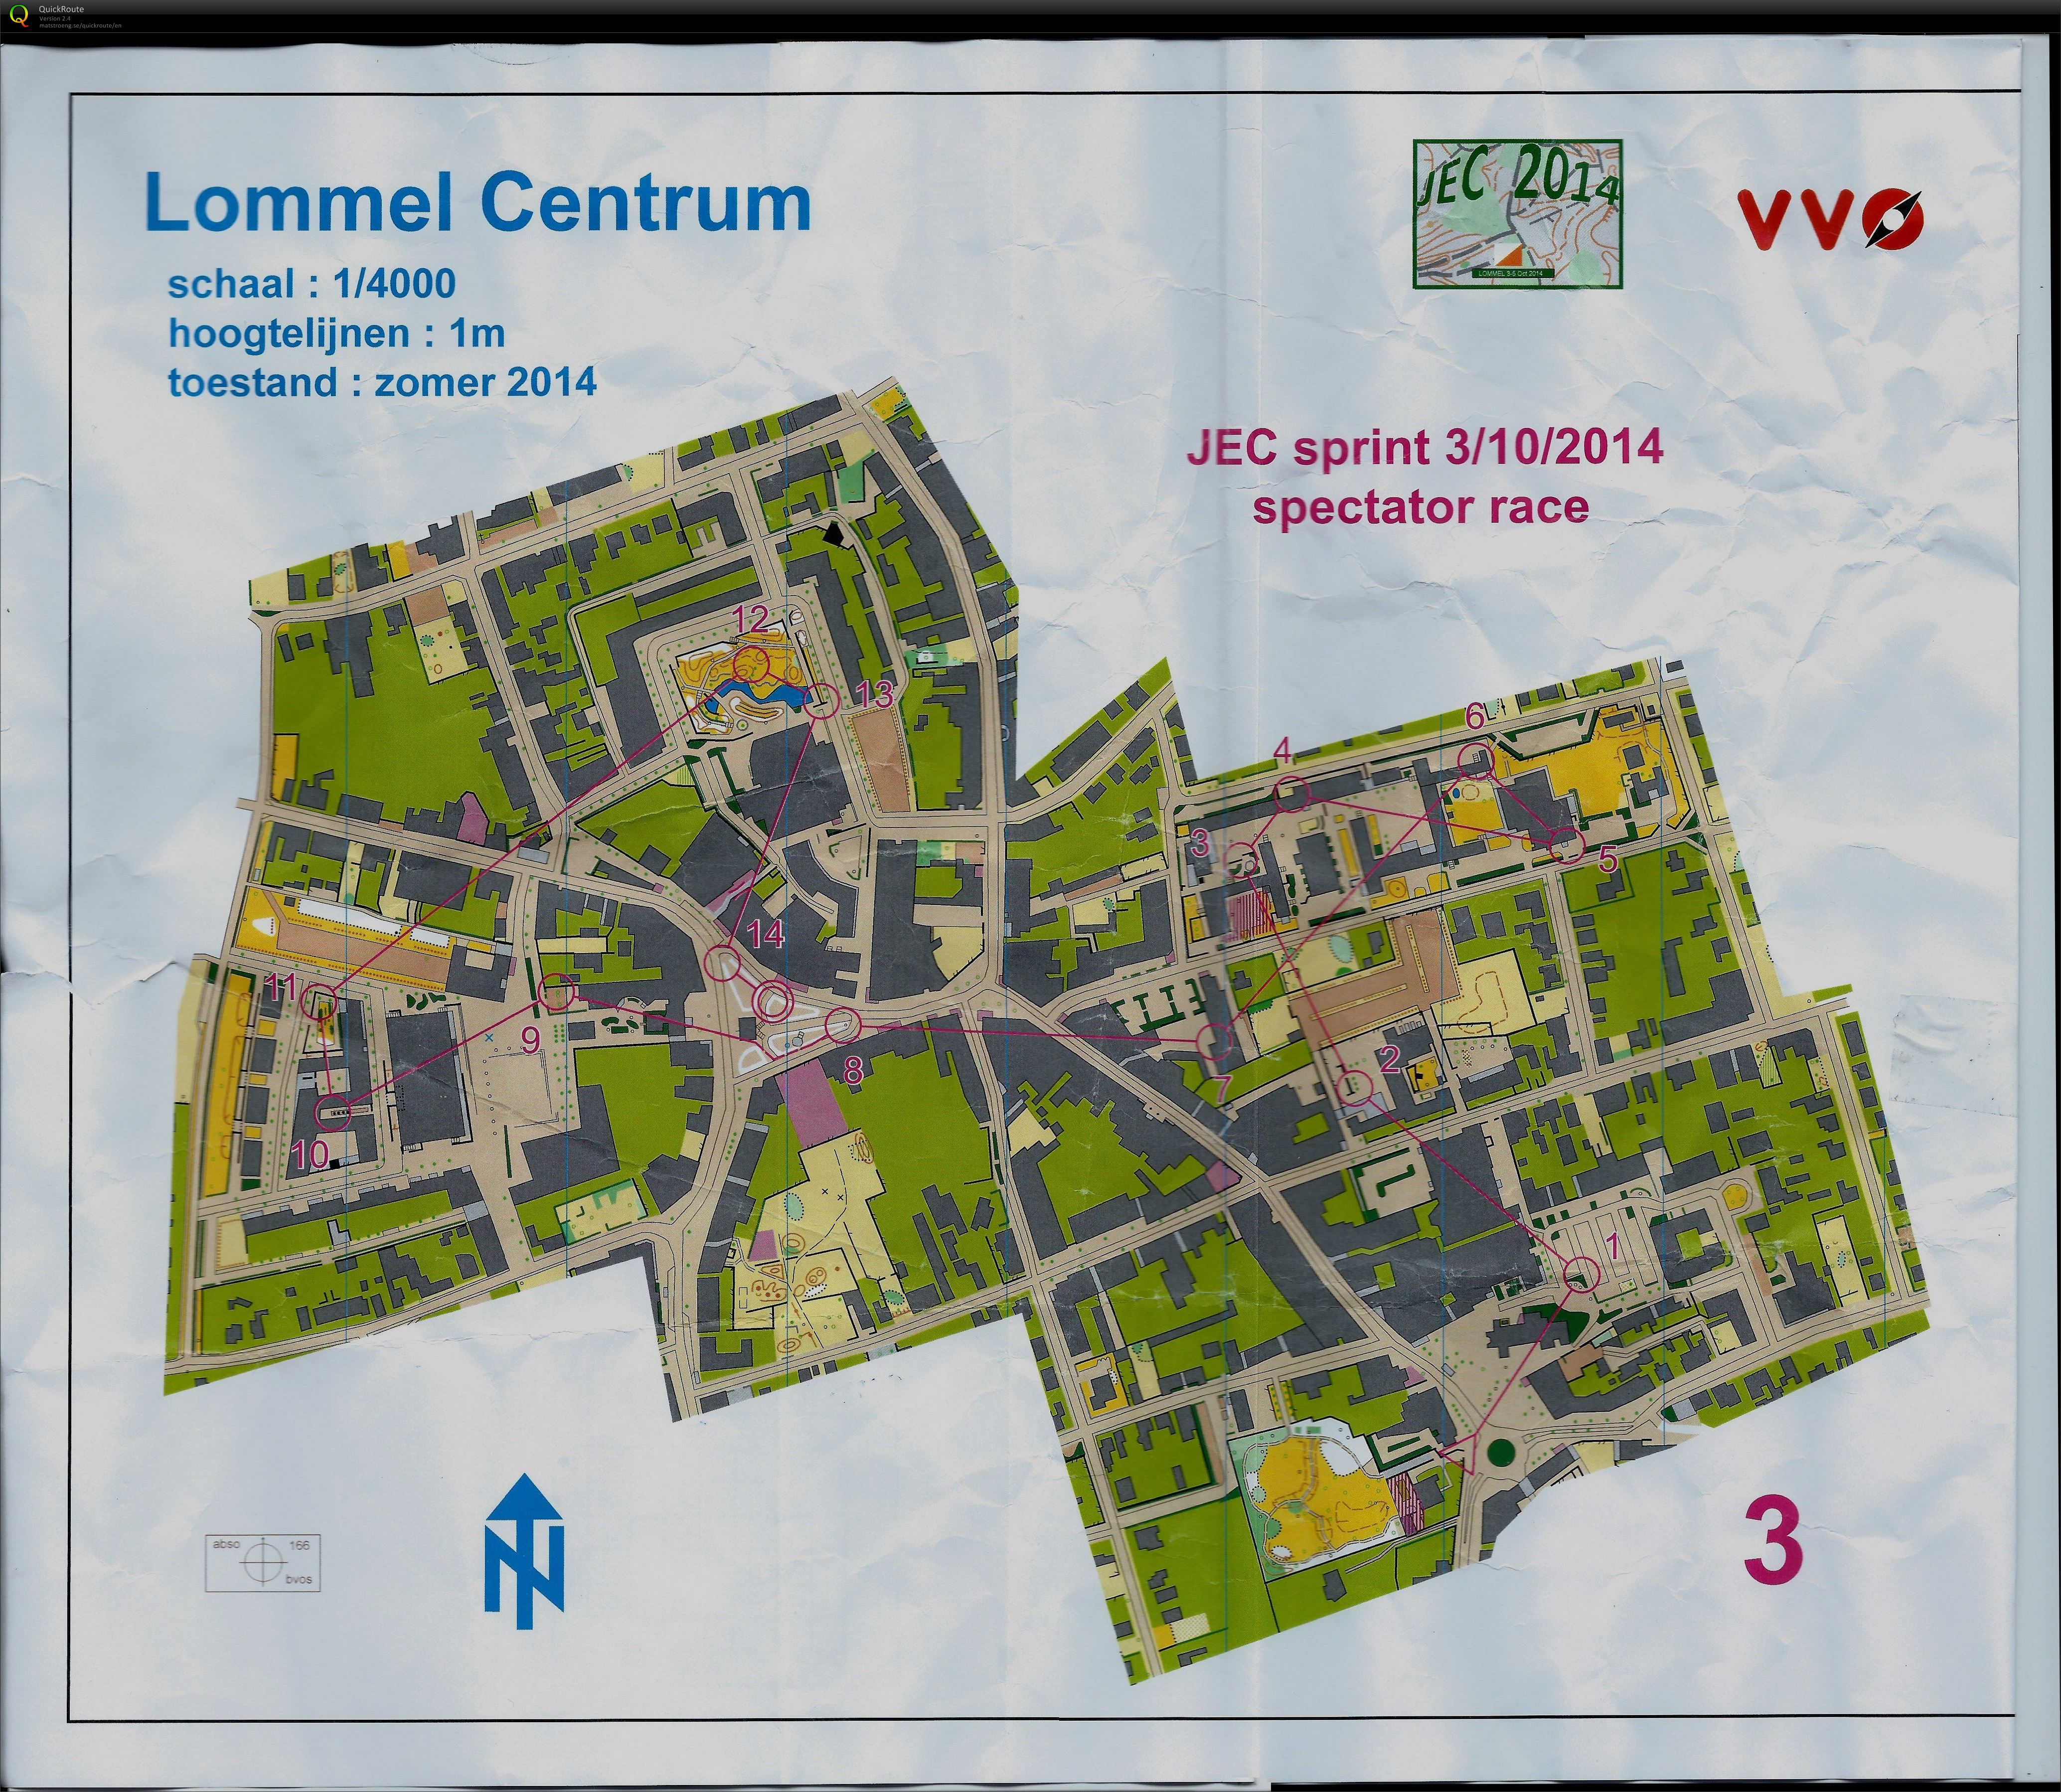 Lommel centrum (03/10/2014)